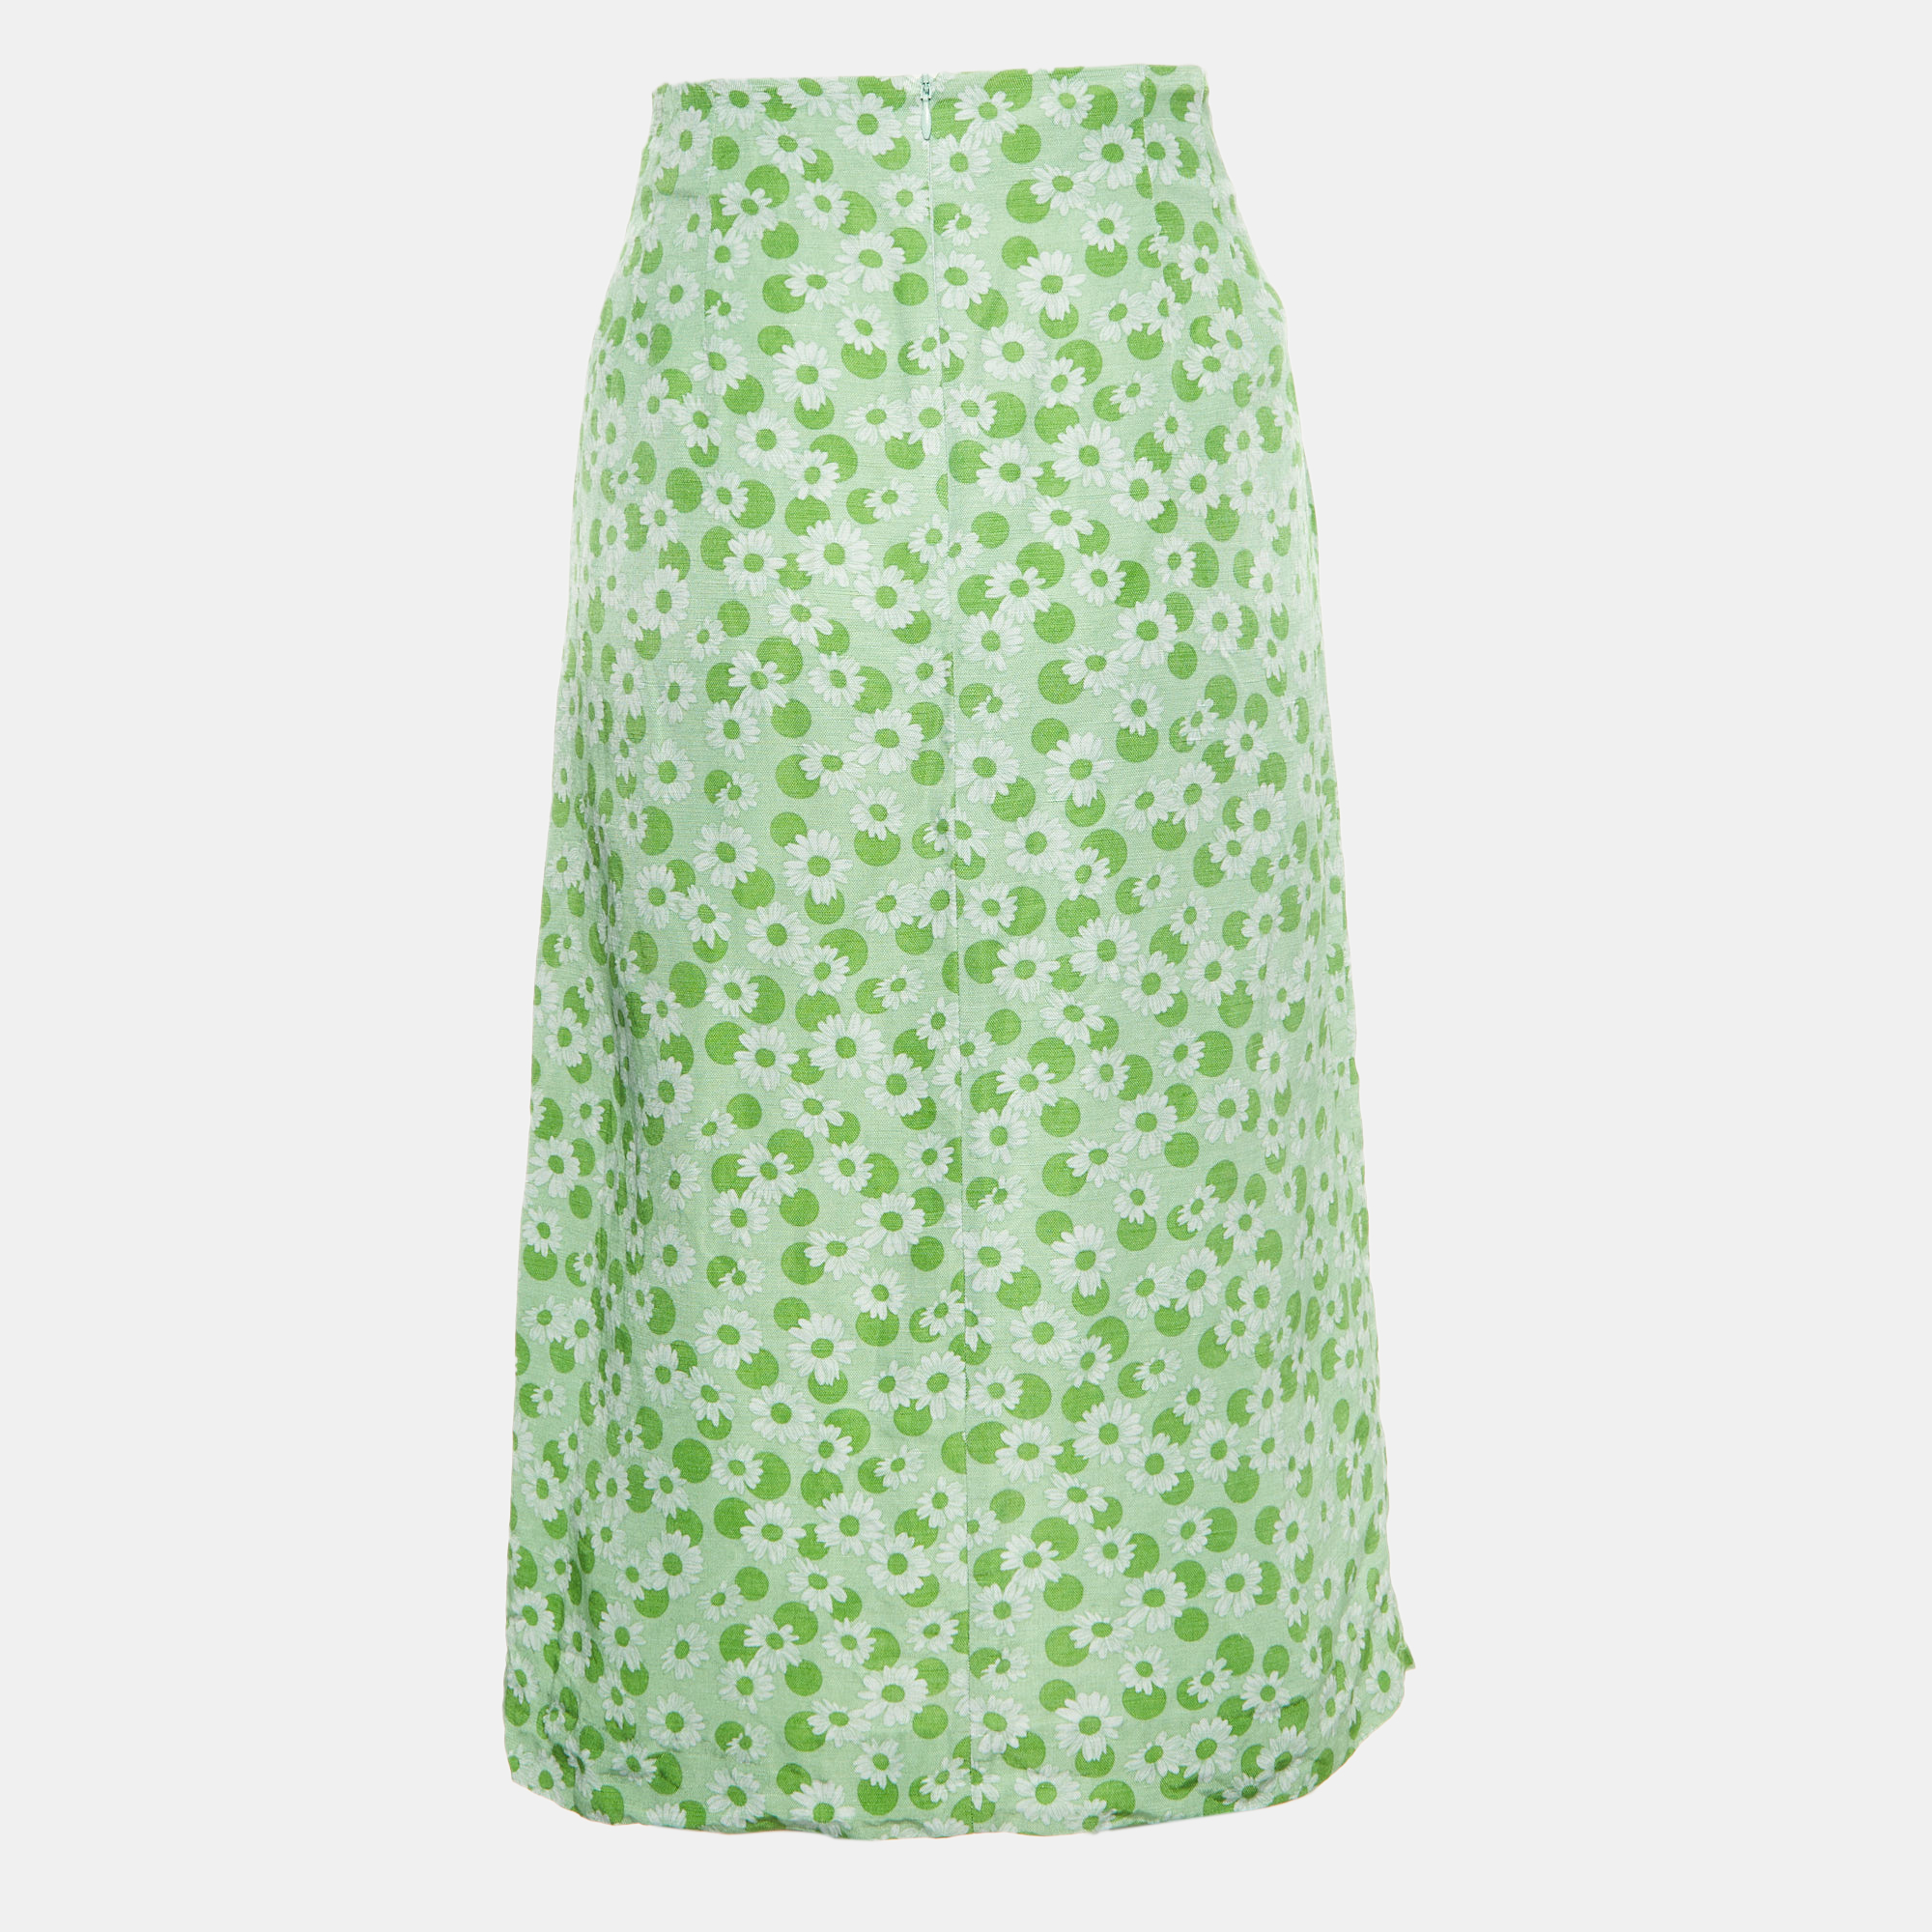 Sandro green printed linen-blend skirt l